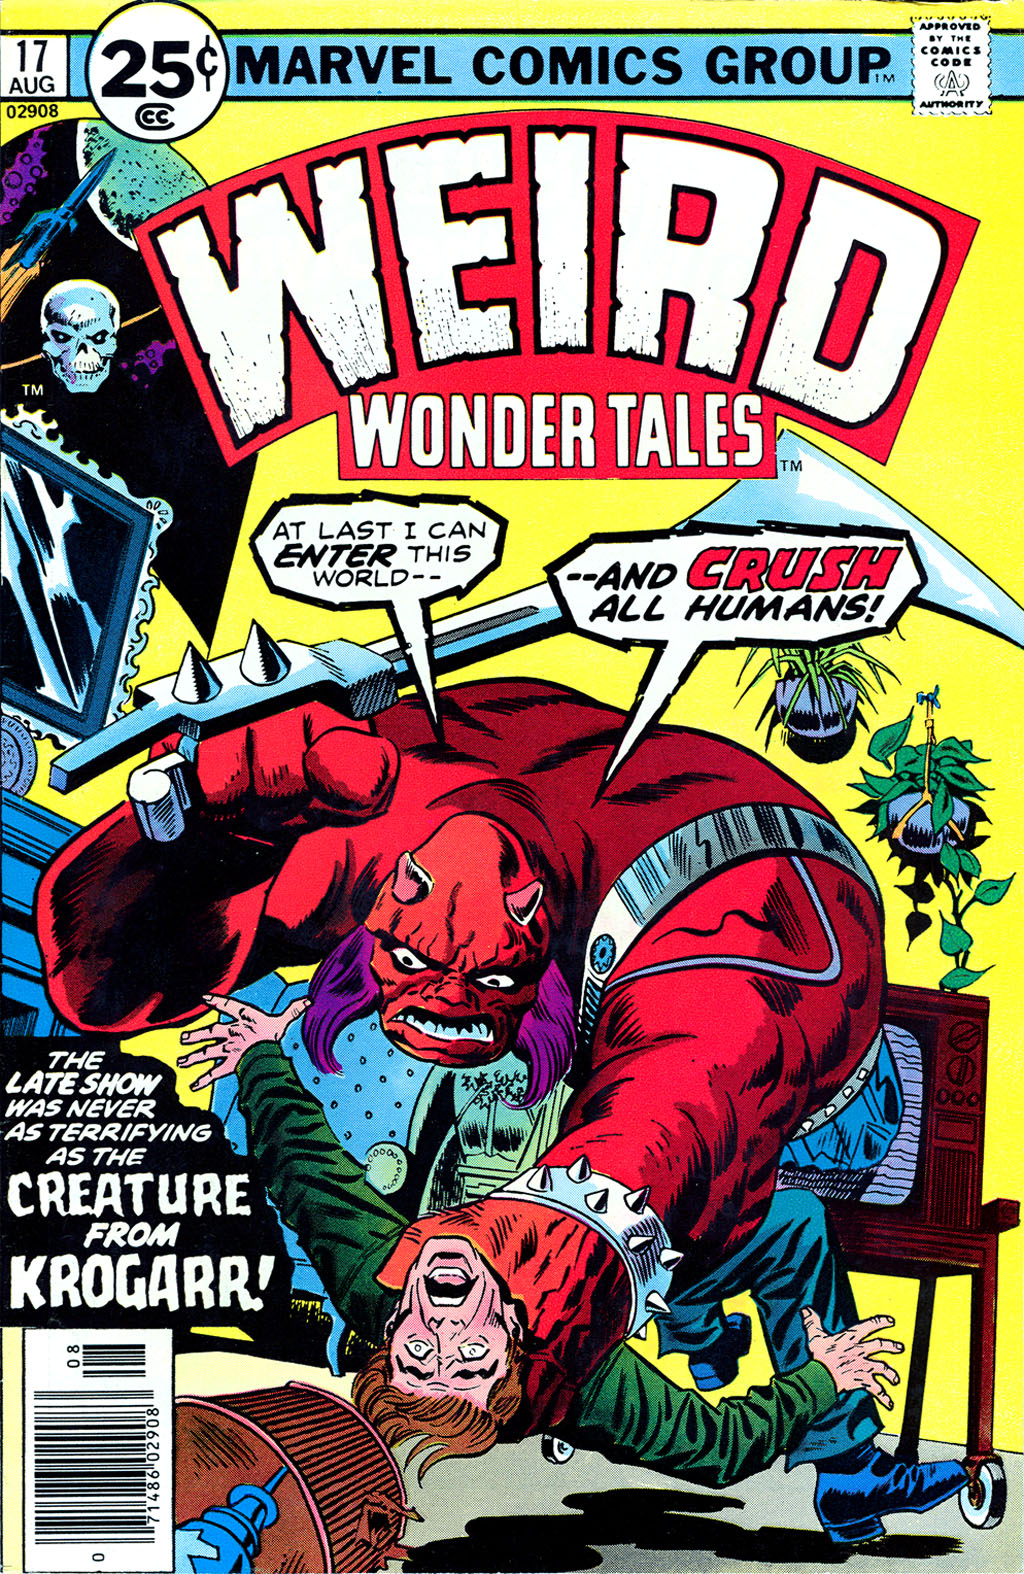 Weird Wonder Tales issue 17 - Page 1